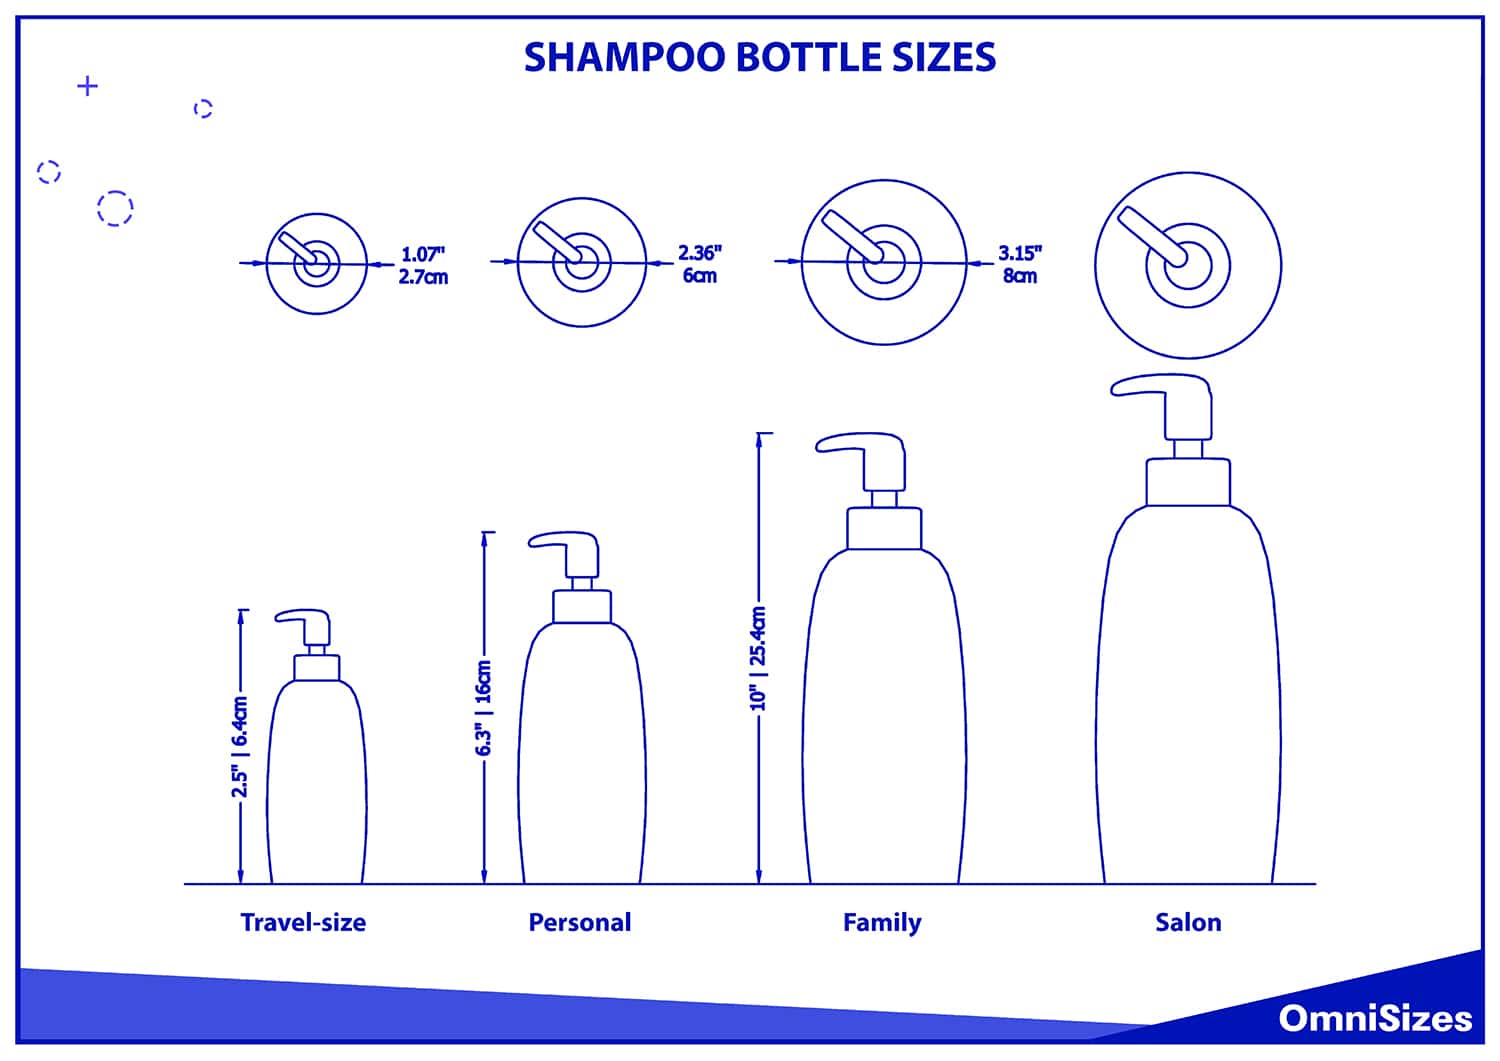 Shampoo bottle sizes